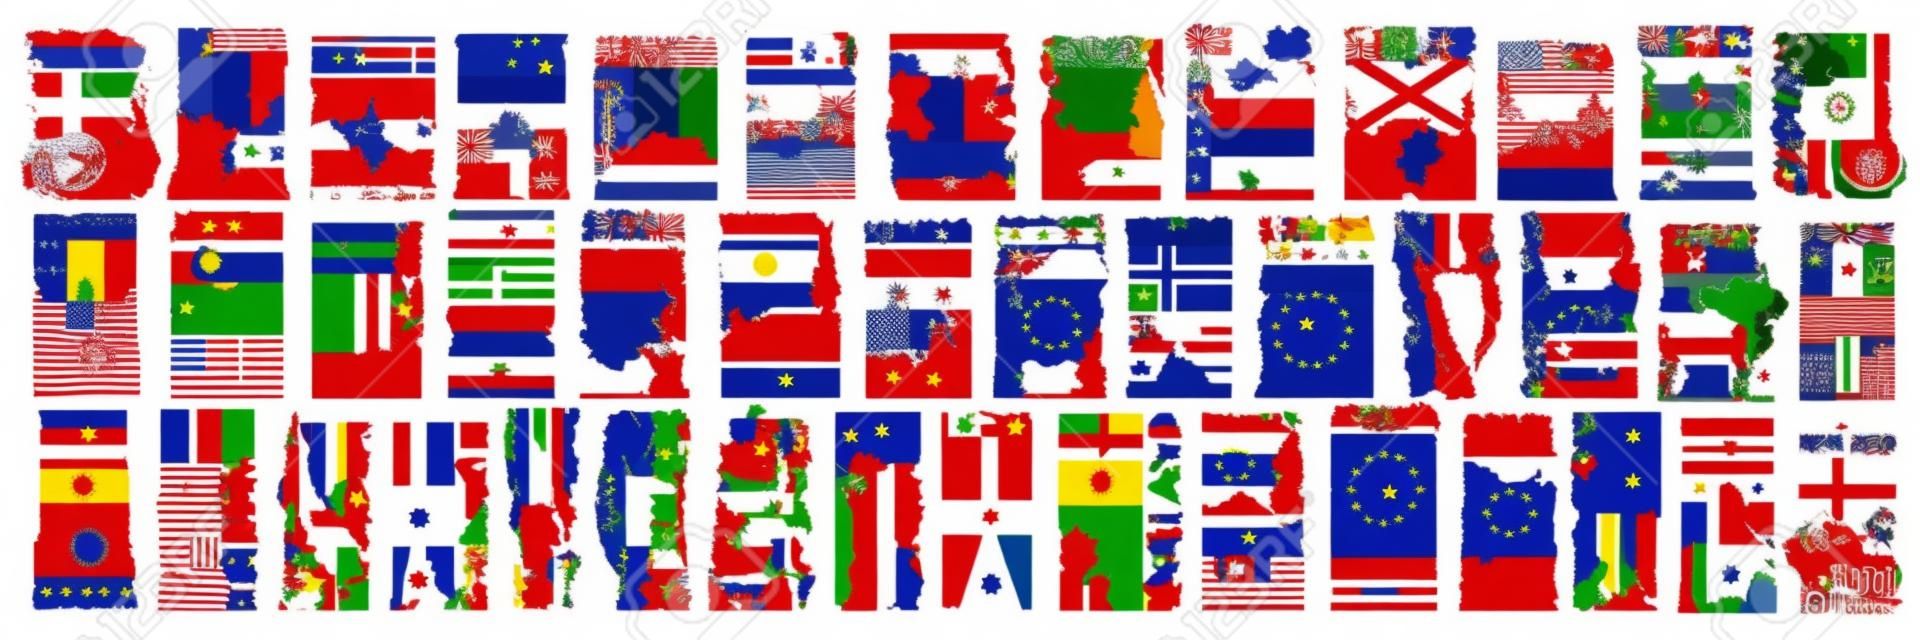 Set vettoriale di paesi europei con bandiere e simboli, 43 etichette verticali isolate con bandiere statali nazionali e font pennello per parole diverse, adesivi di design artistico per il giorno dell'indipendenza europea.